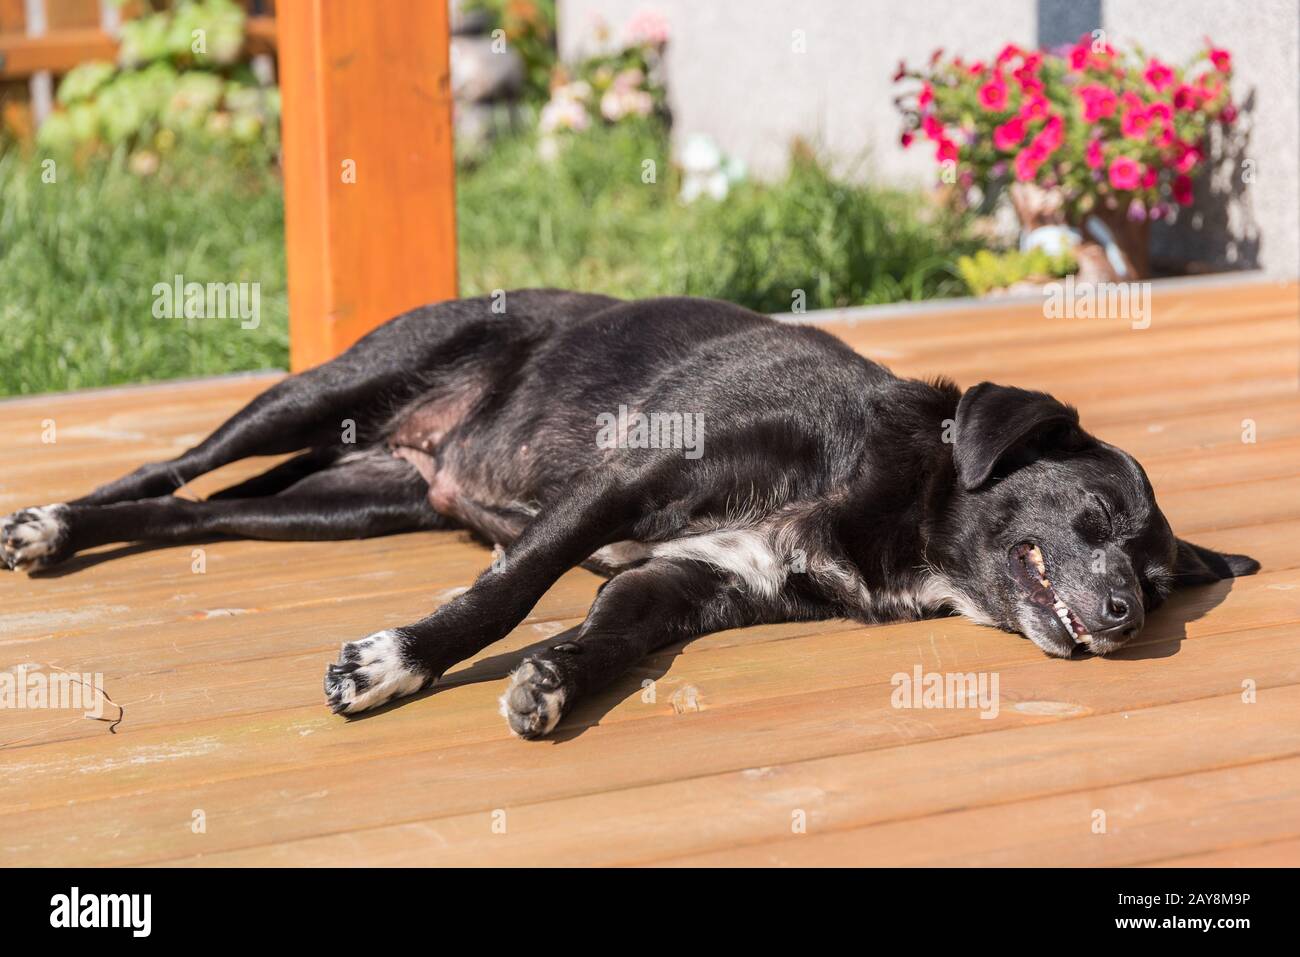 Schwarzer Hund liegt entspannt in der strahlenden Sonne Stockfotografie -  Alamy